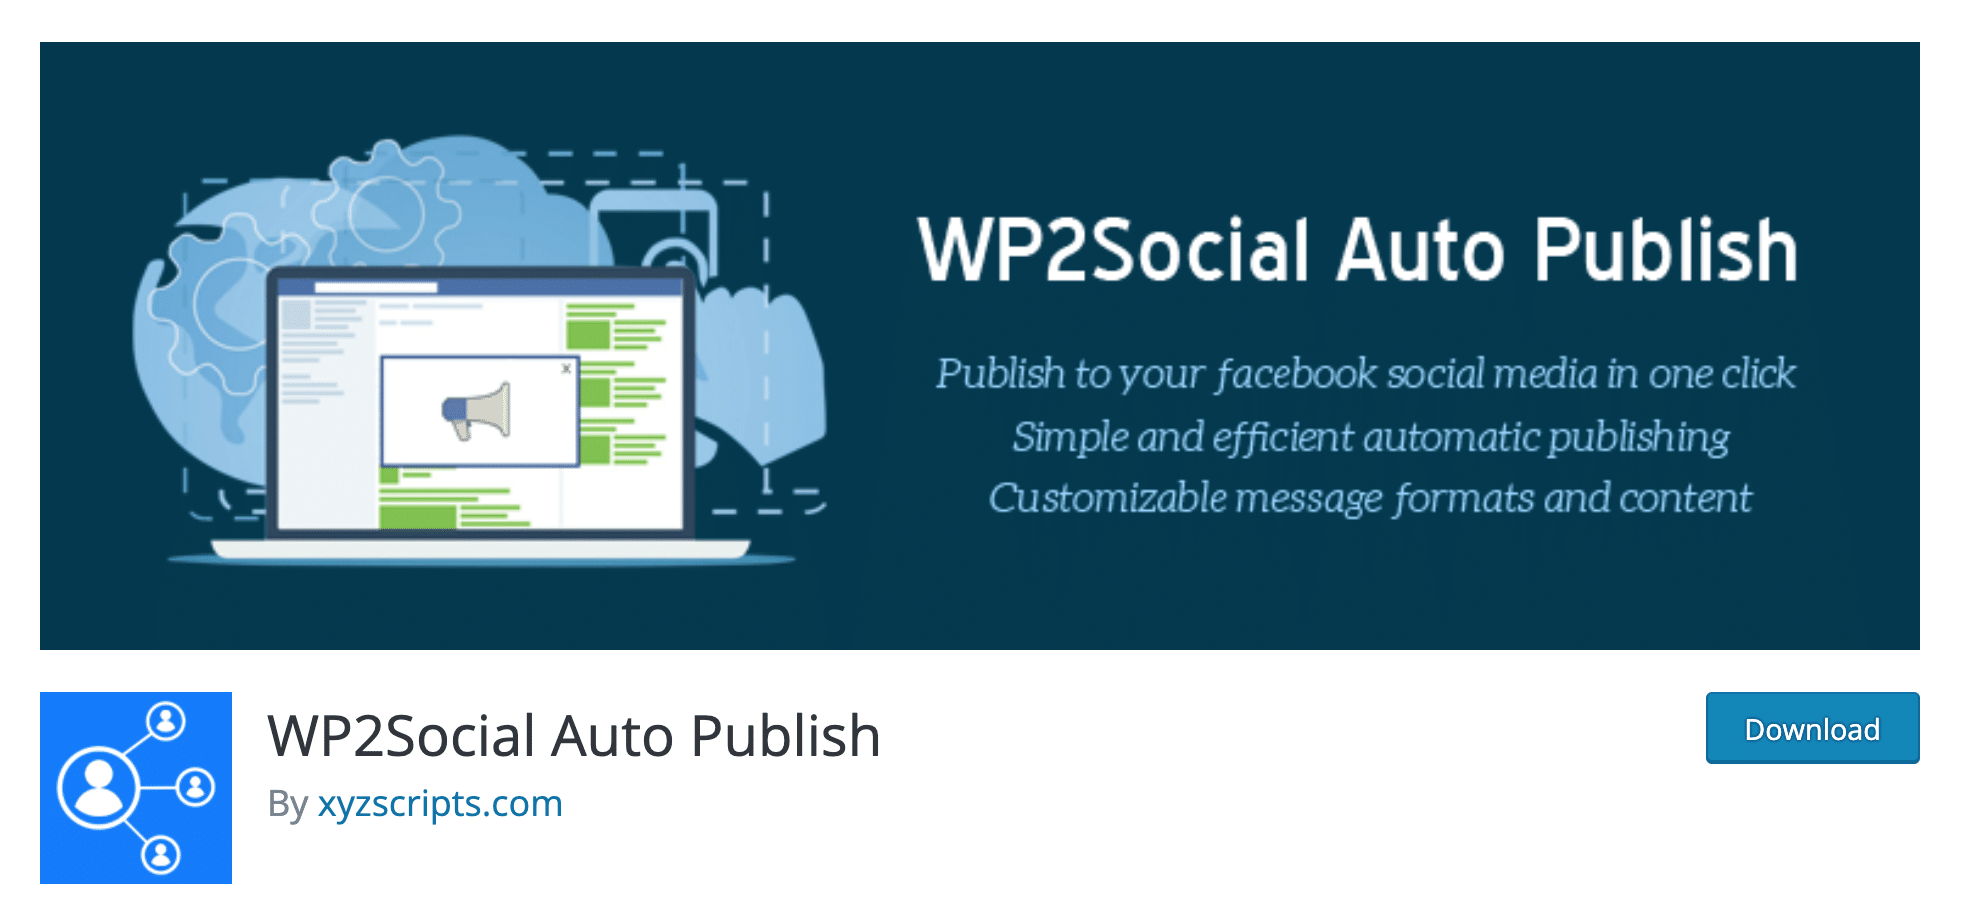 wp2social auto publish